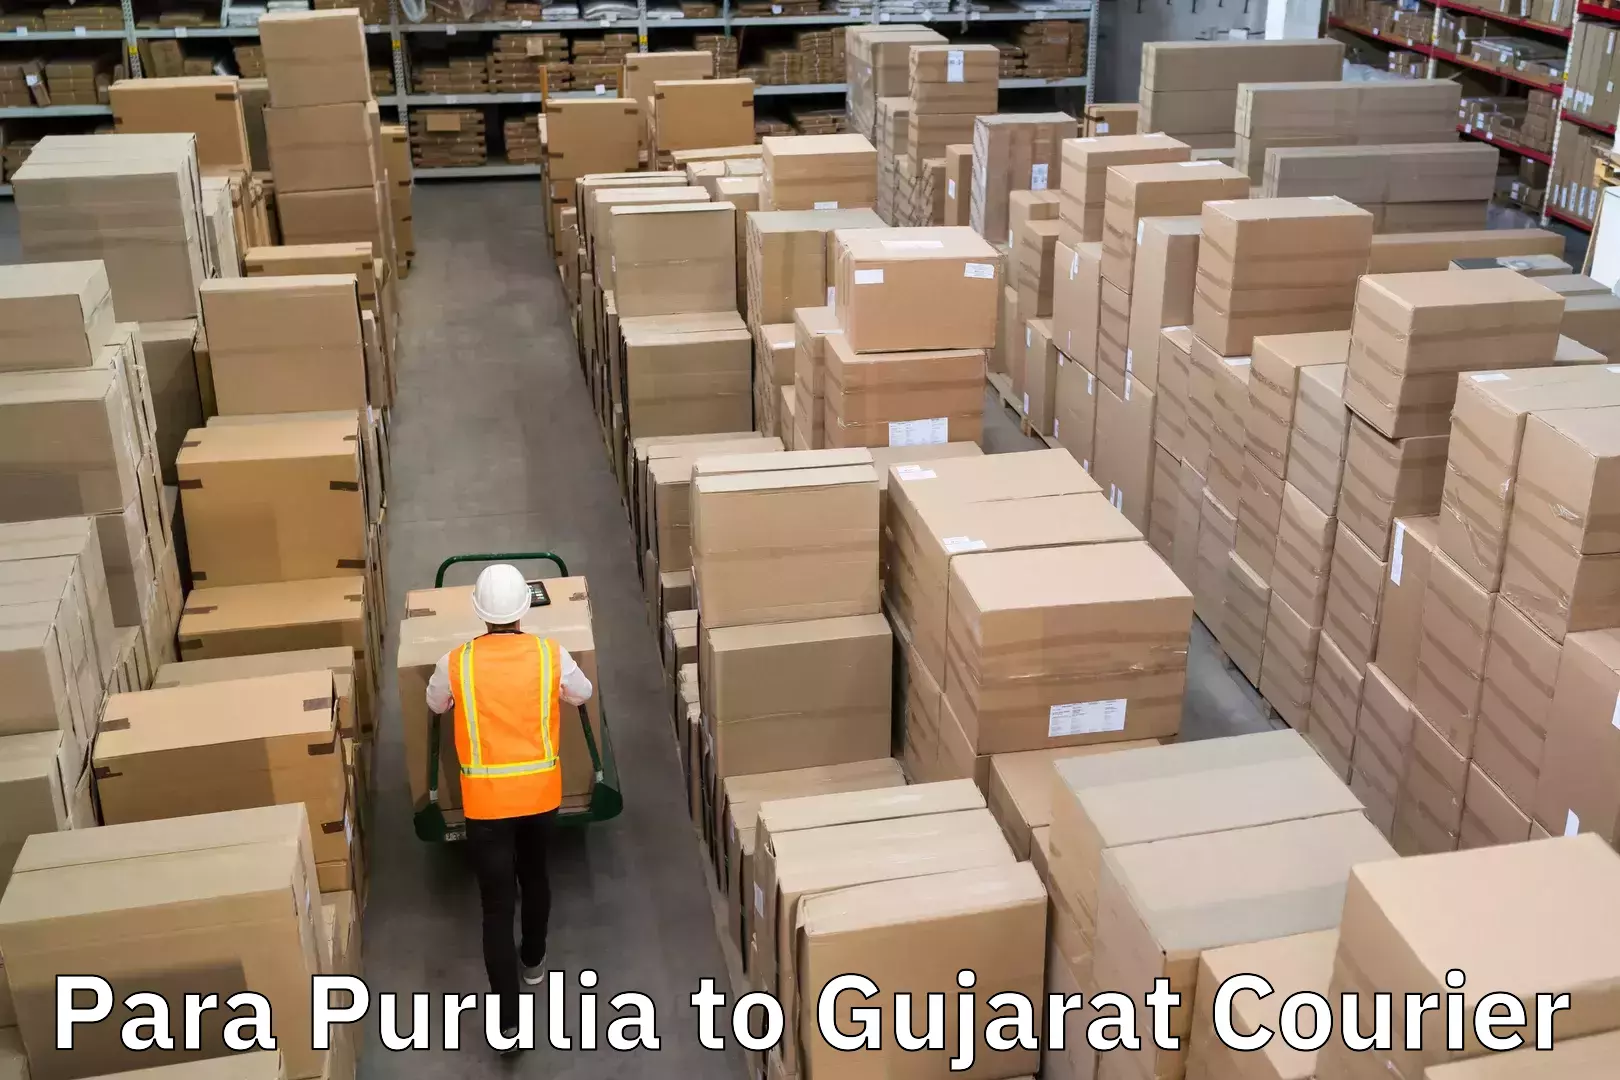 Round-the-clock parcel delivery Para Purulia to Gujarat